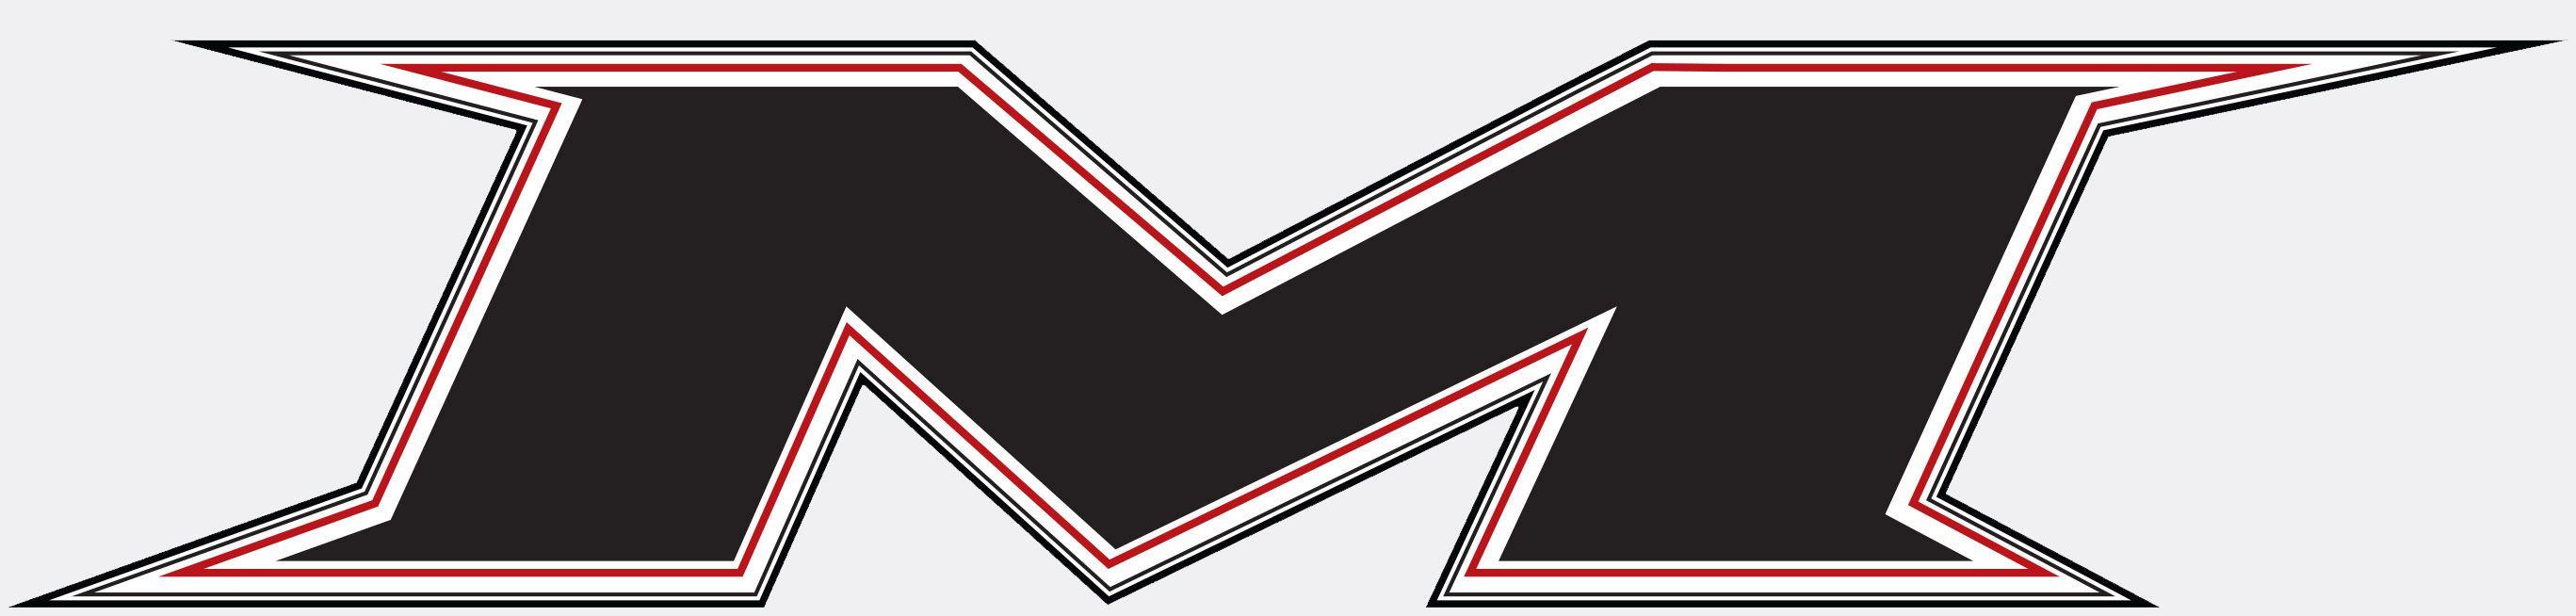 Miken Softball Logo - Miken Logos